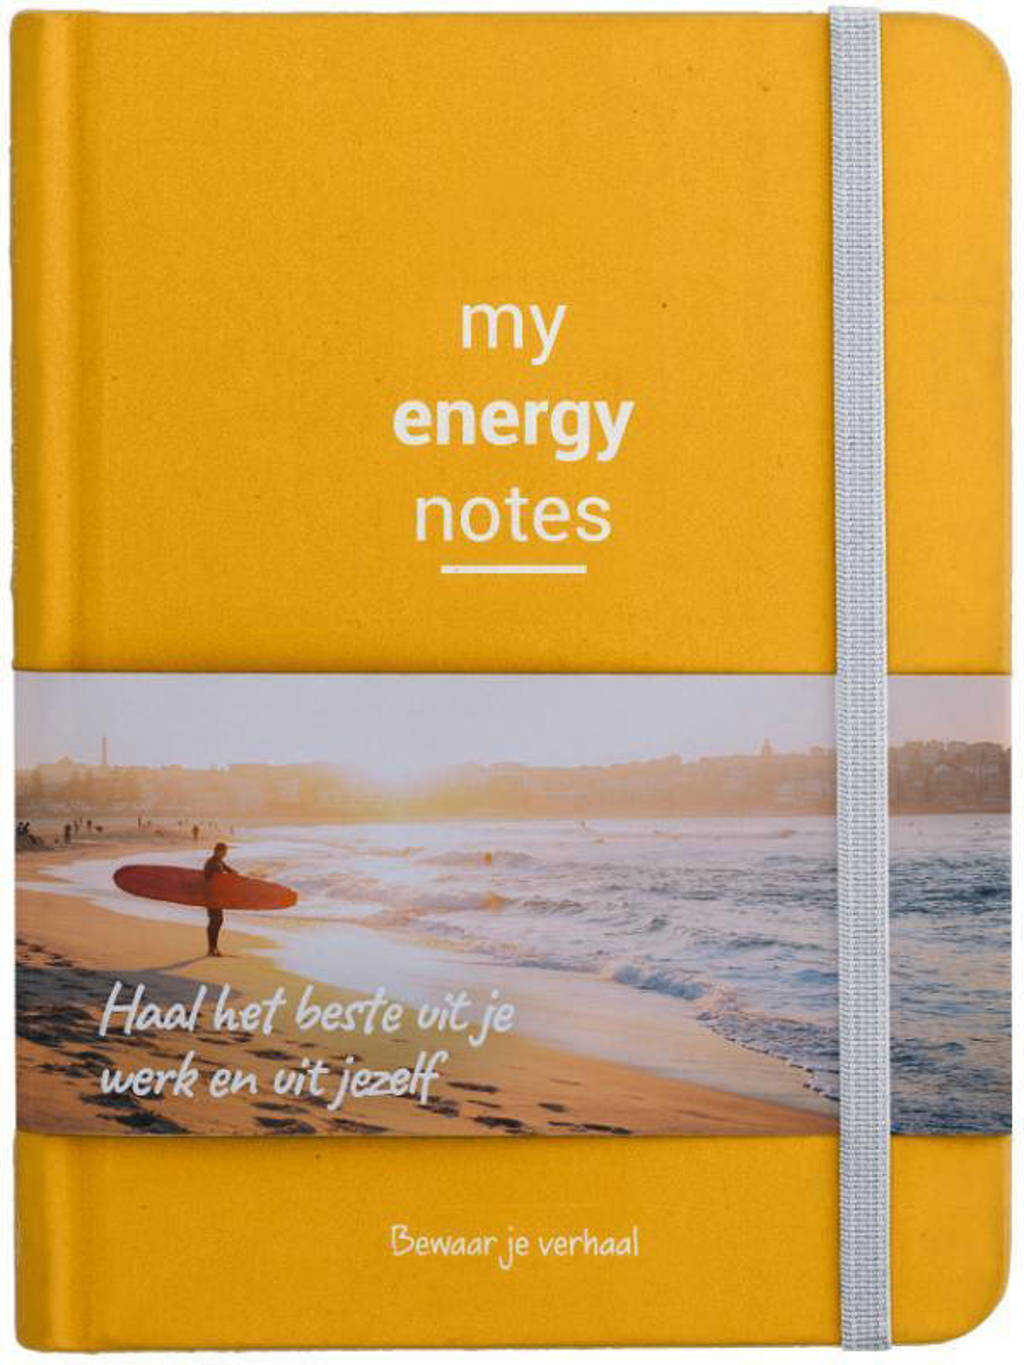 My Energy Notes - Thomas Beekman en Marilou Van der Keur